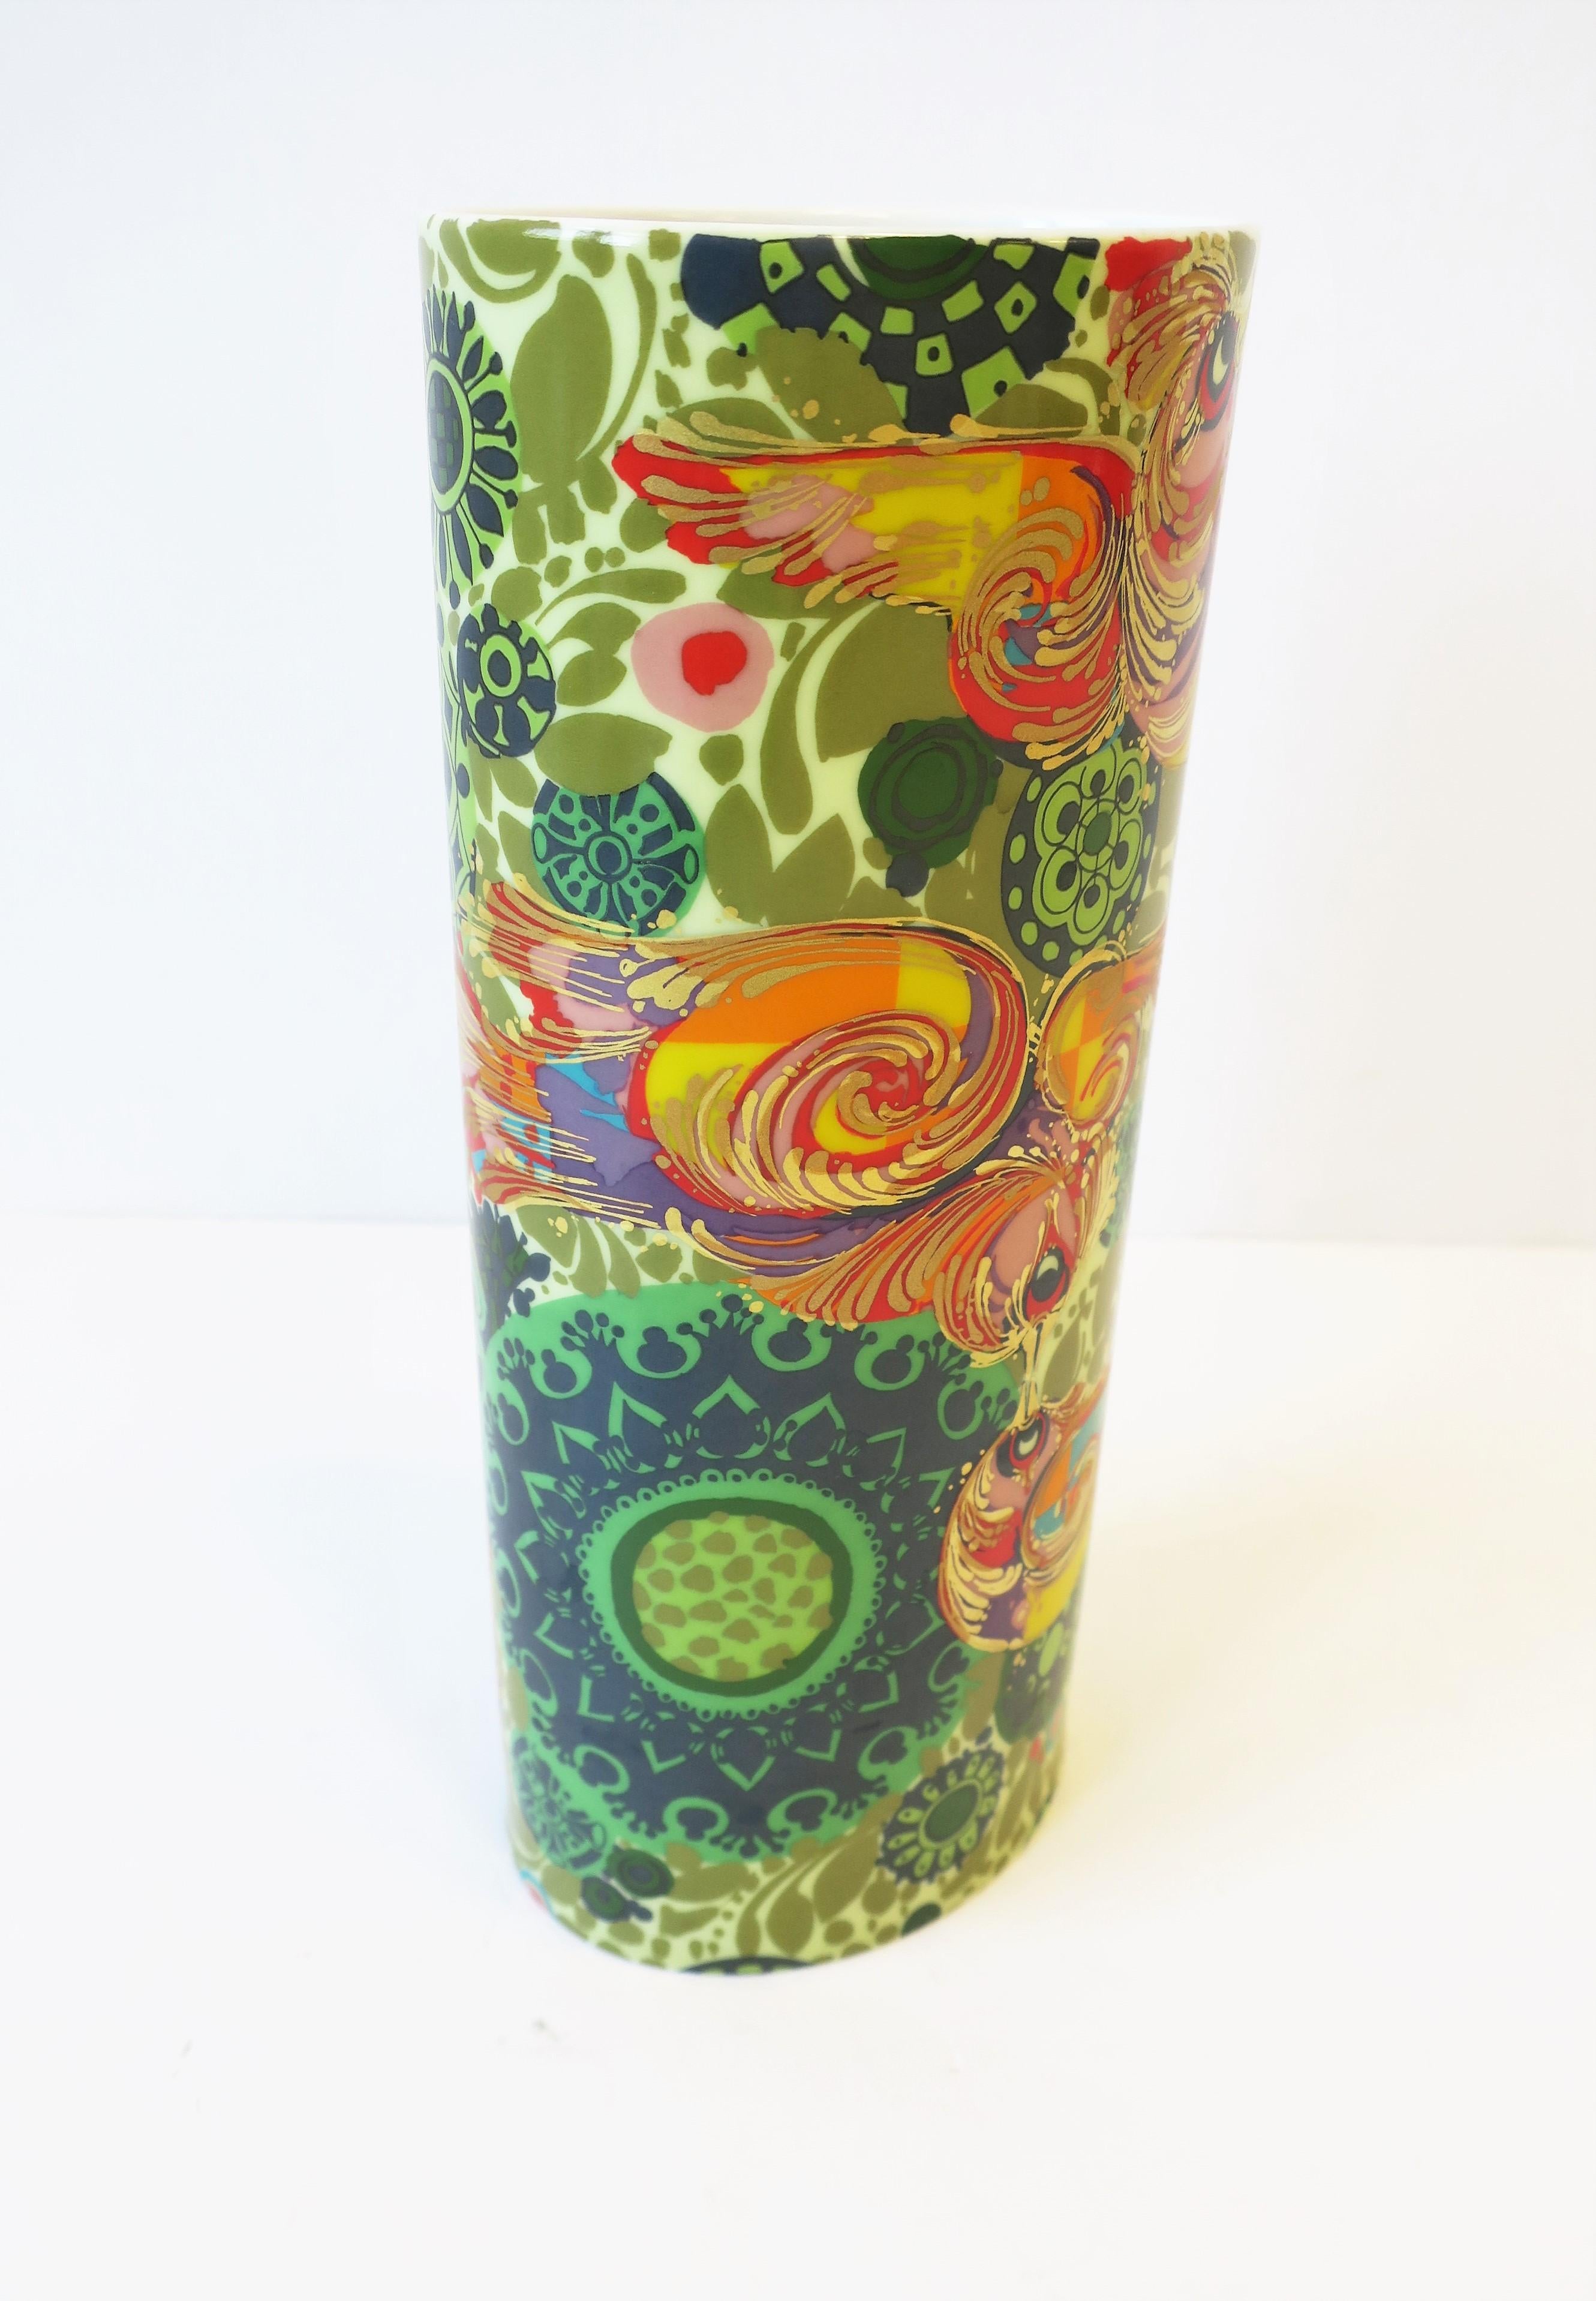 Rosenthal Studio-Line Vase by Danish Designer Bjorn Wiinblad with Bird Design 5